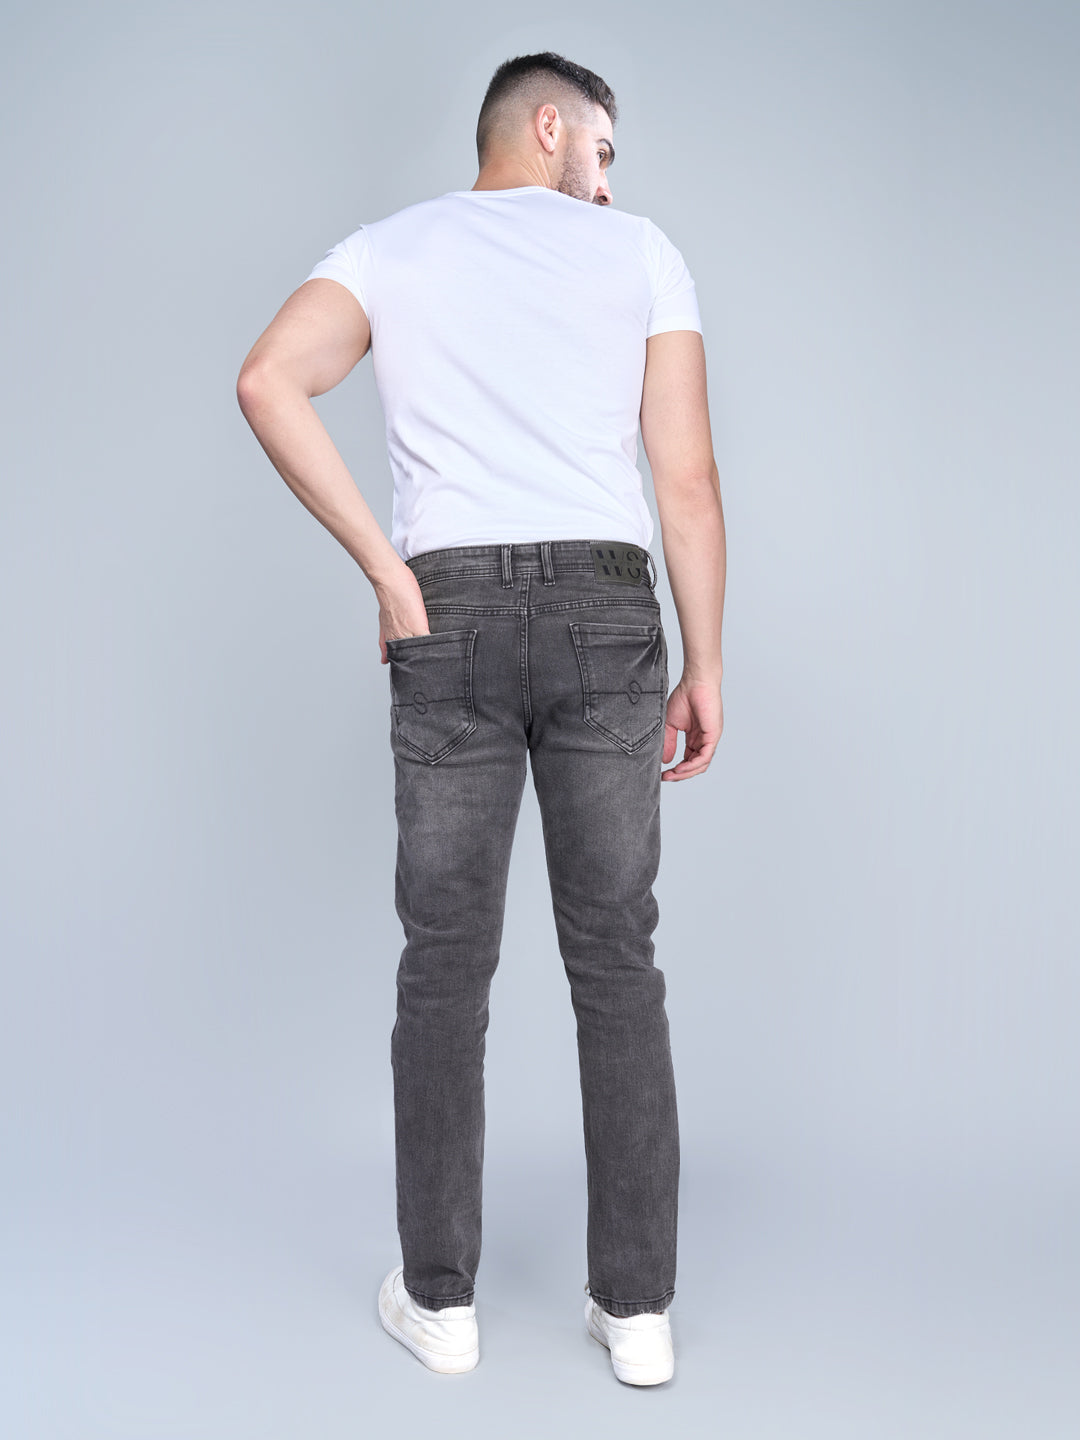 STEAMZ Carbon Mens Comfort Fit Jeans